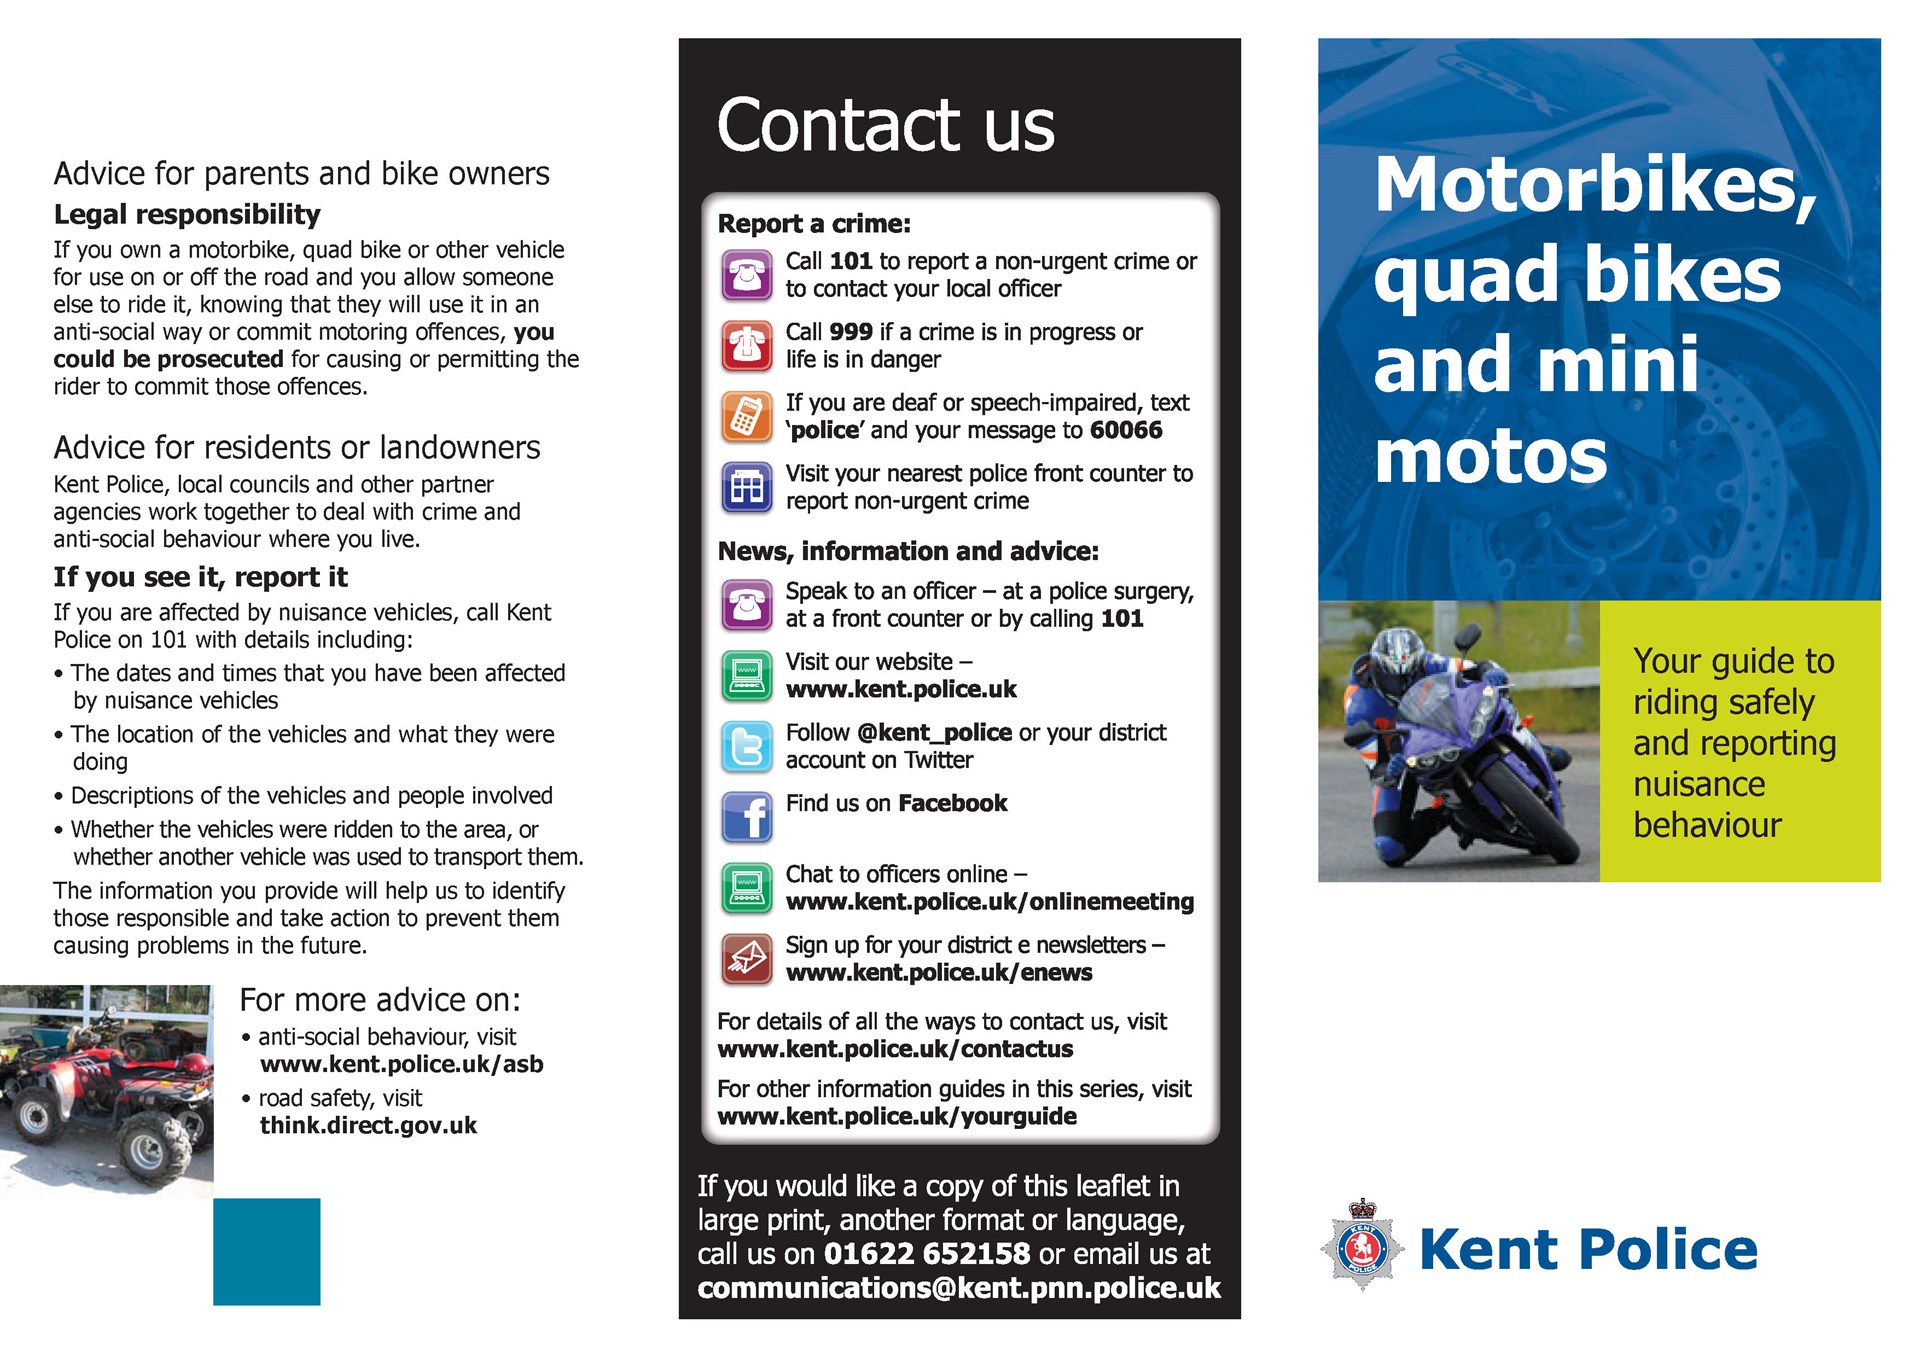 Dunton Green Parish Council Motorcycles, quad bikes...